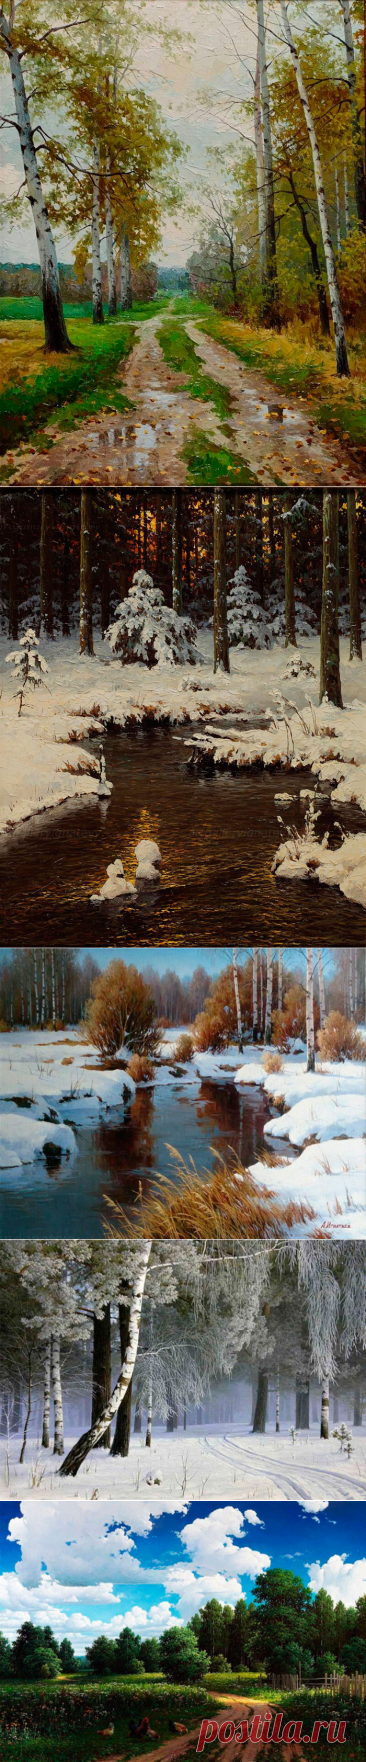 Александр Игнатьев художник пейзажист